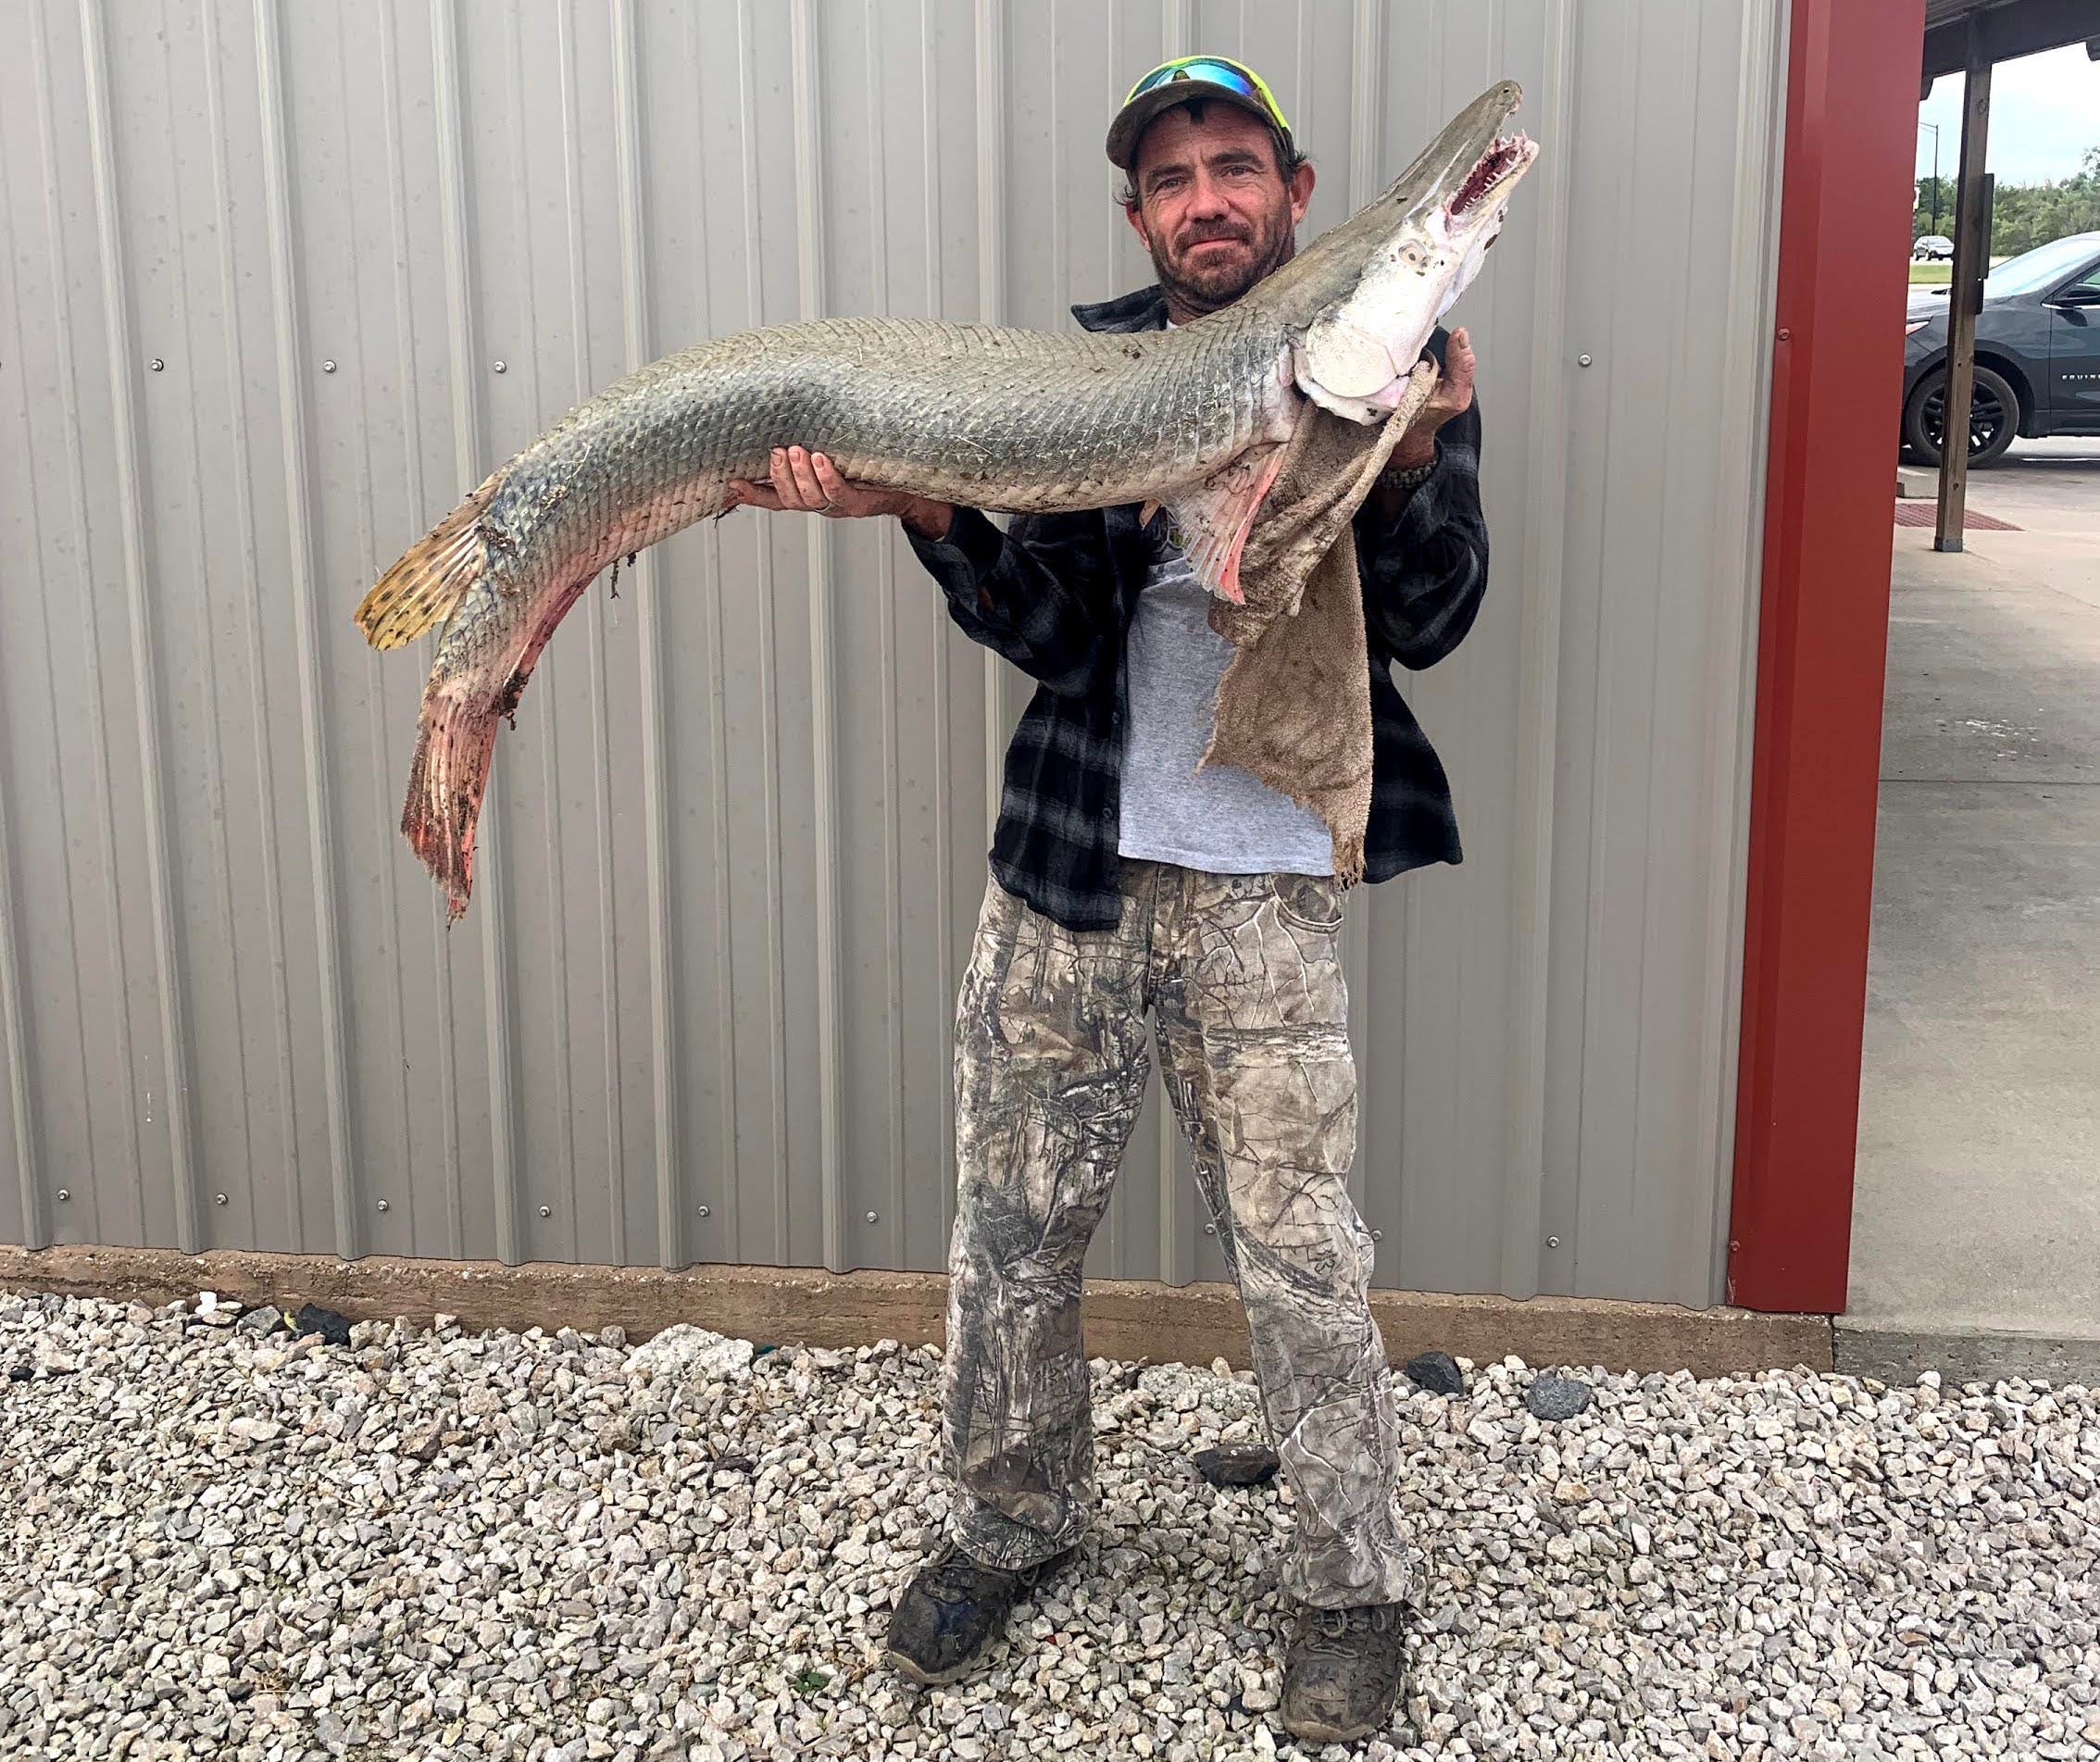 The alligator gar was caught in Neosho River